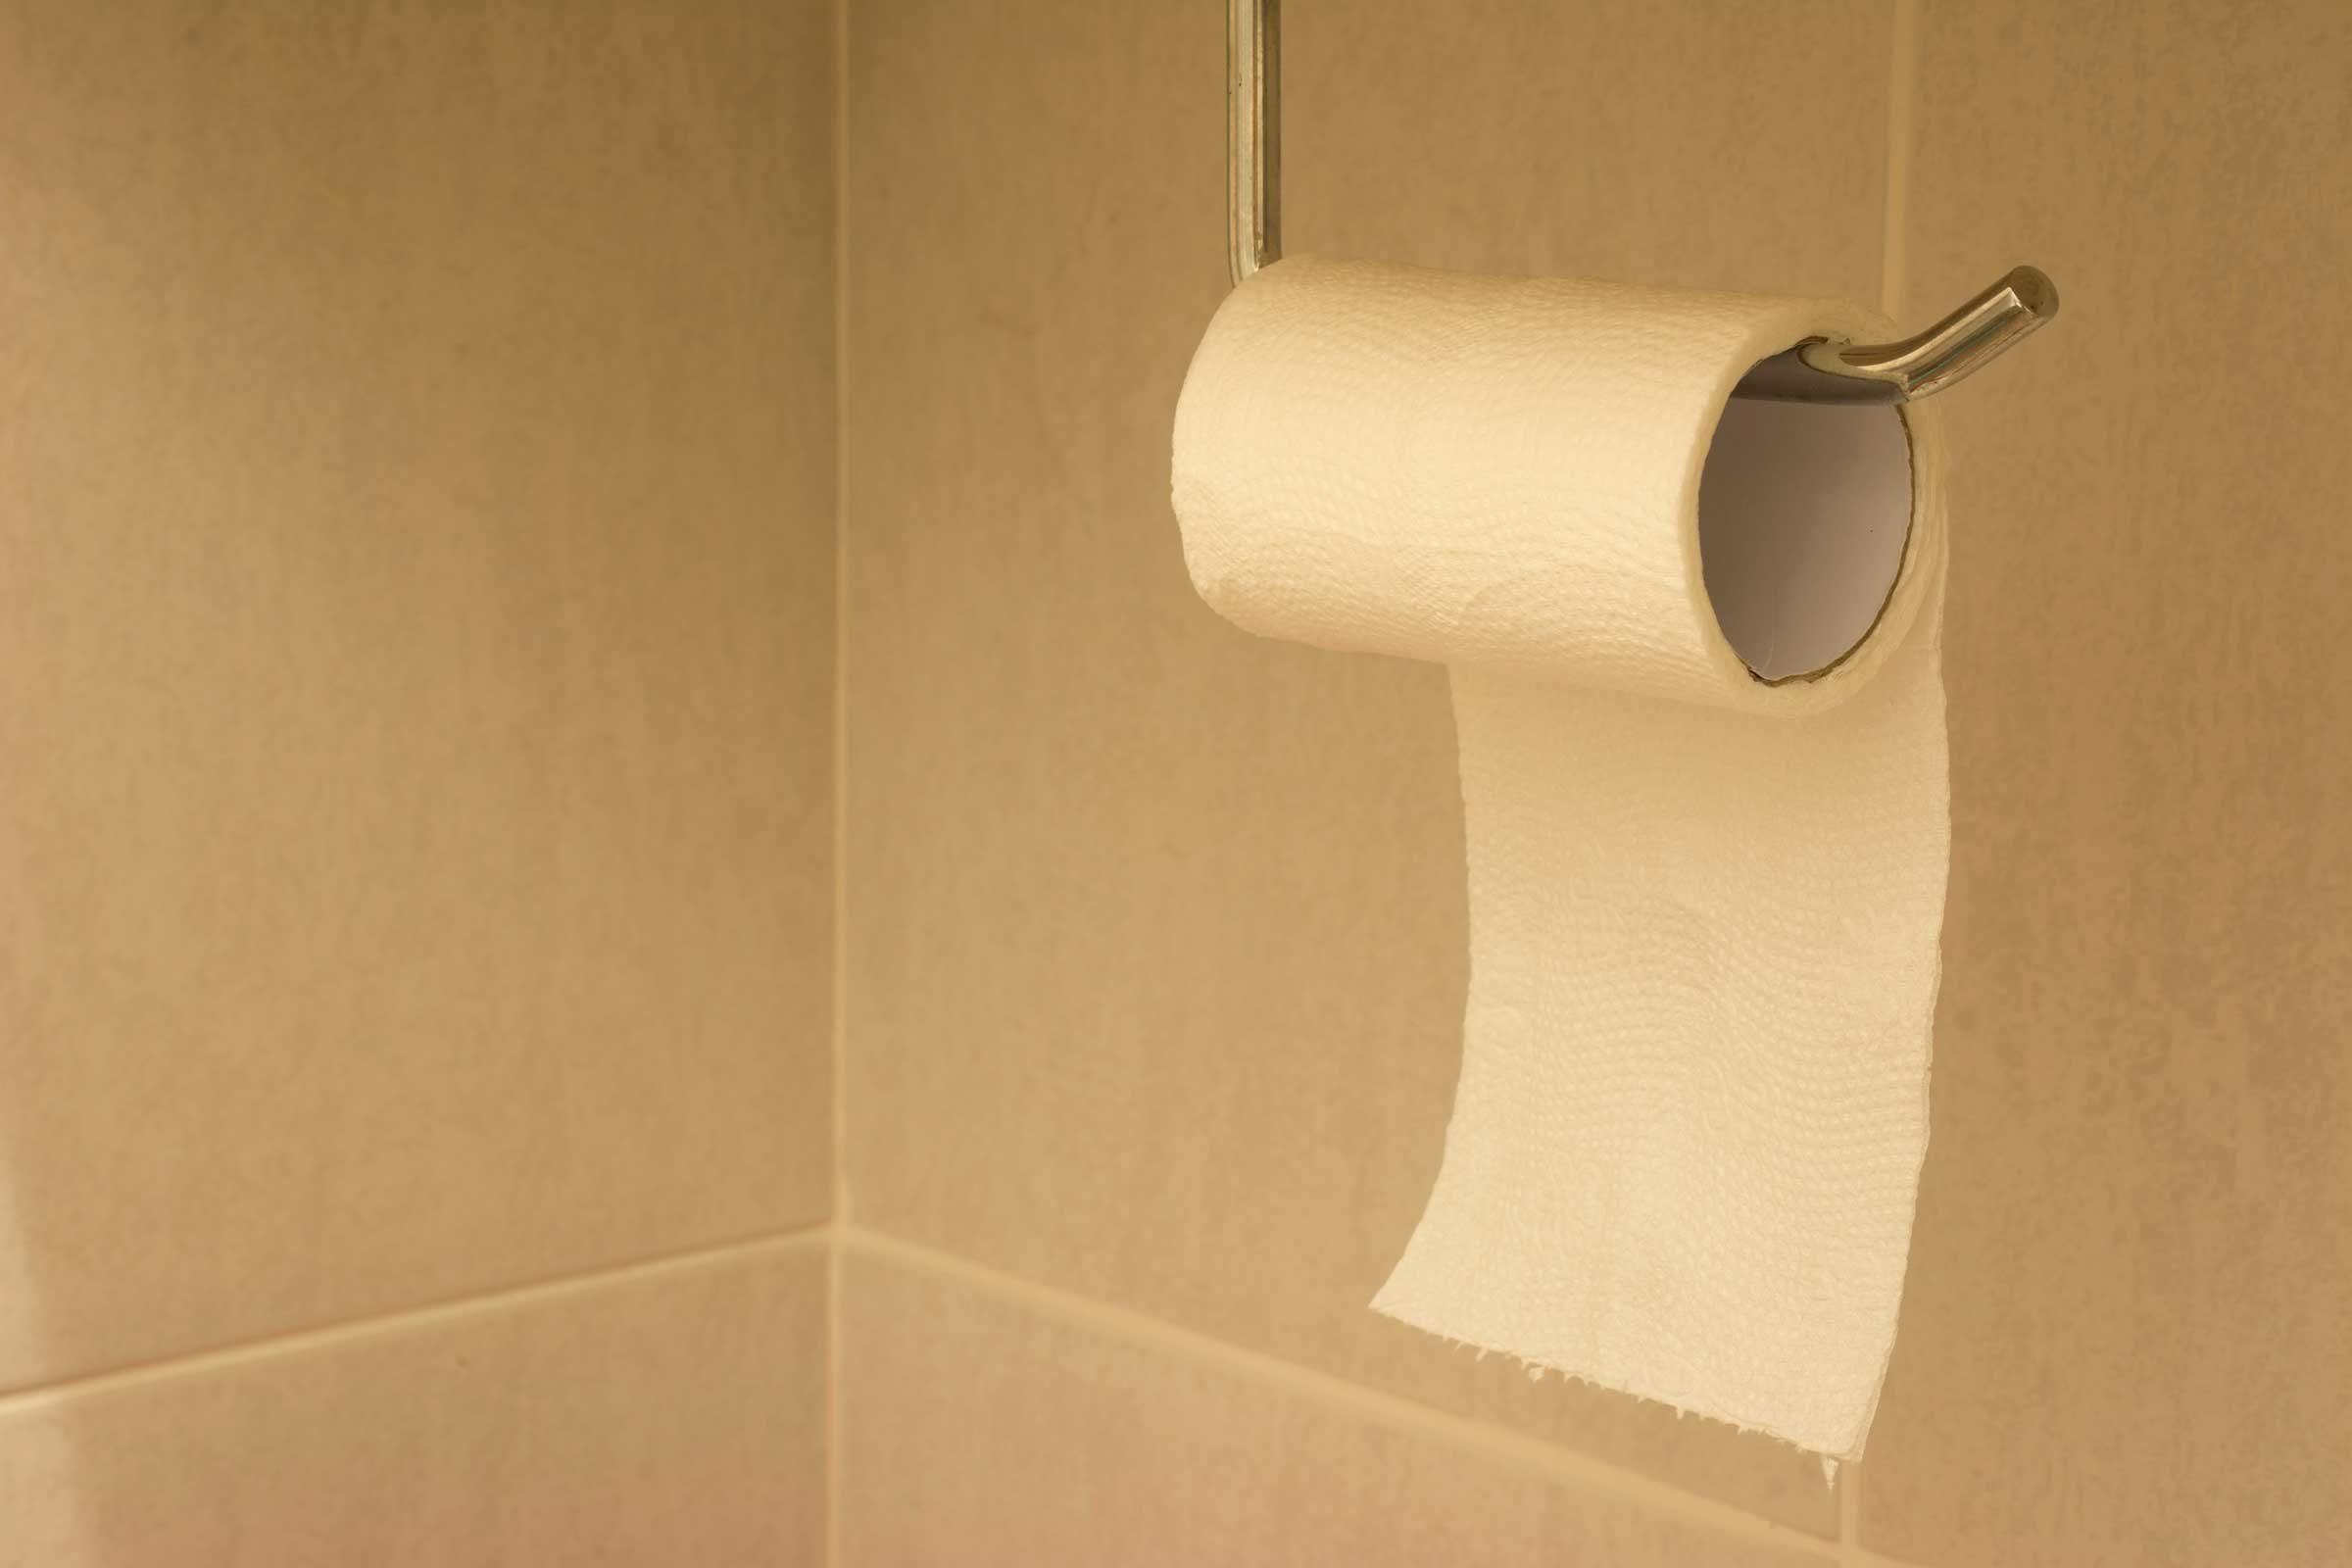 Toilet paper up anus  photo